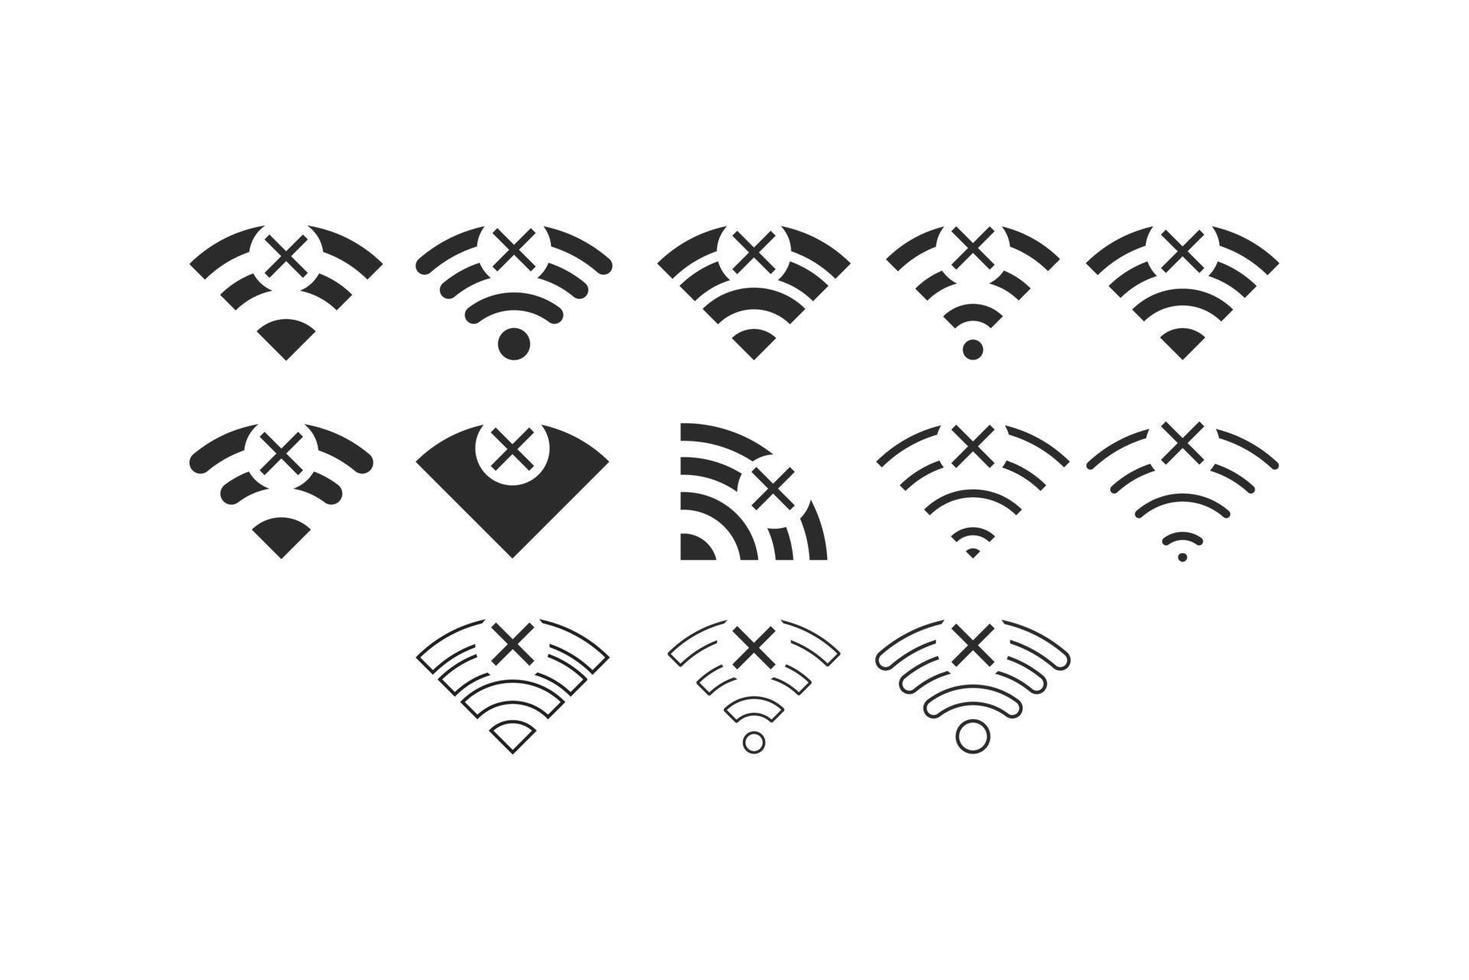 conjunto de conexiones inalámbricas sin wifi icono signo vector color negro